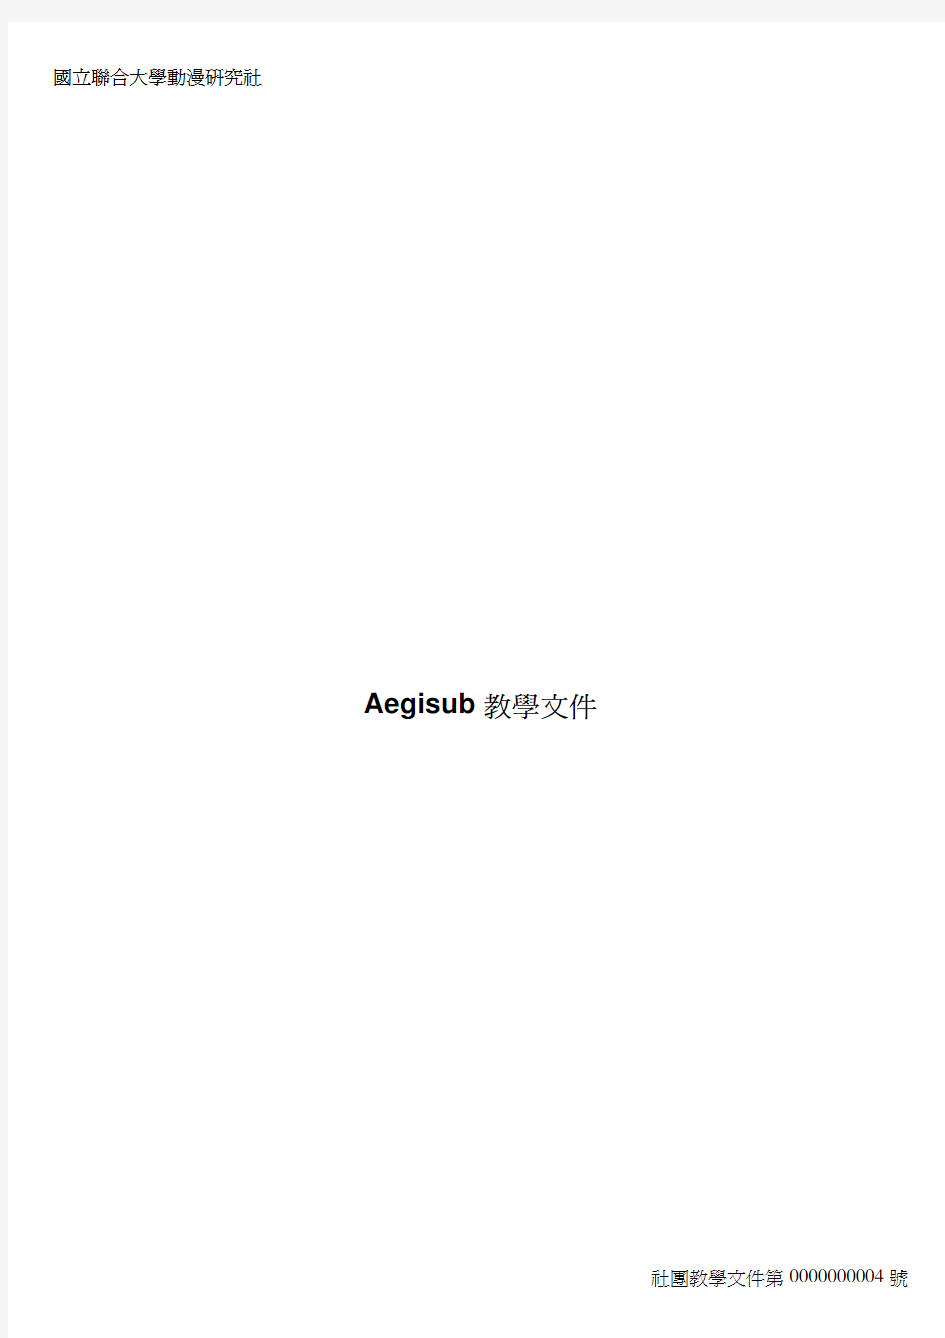 Aegisub 使用说明(中文版)包含所有的ASS、SSA特效指令,指令大全